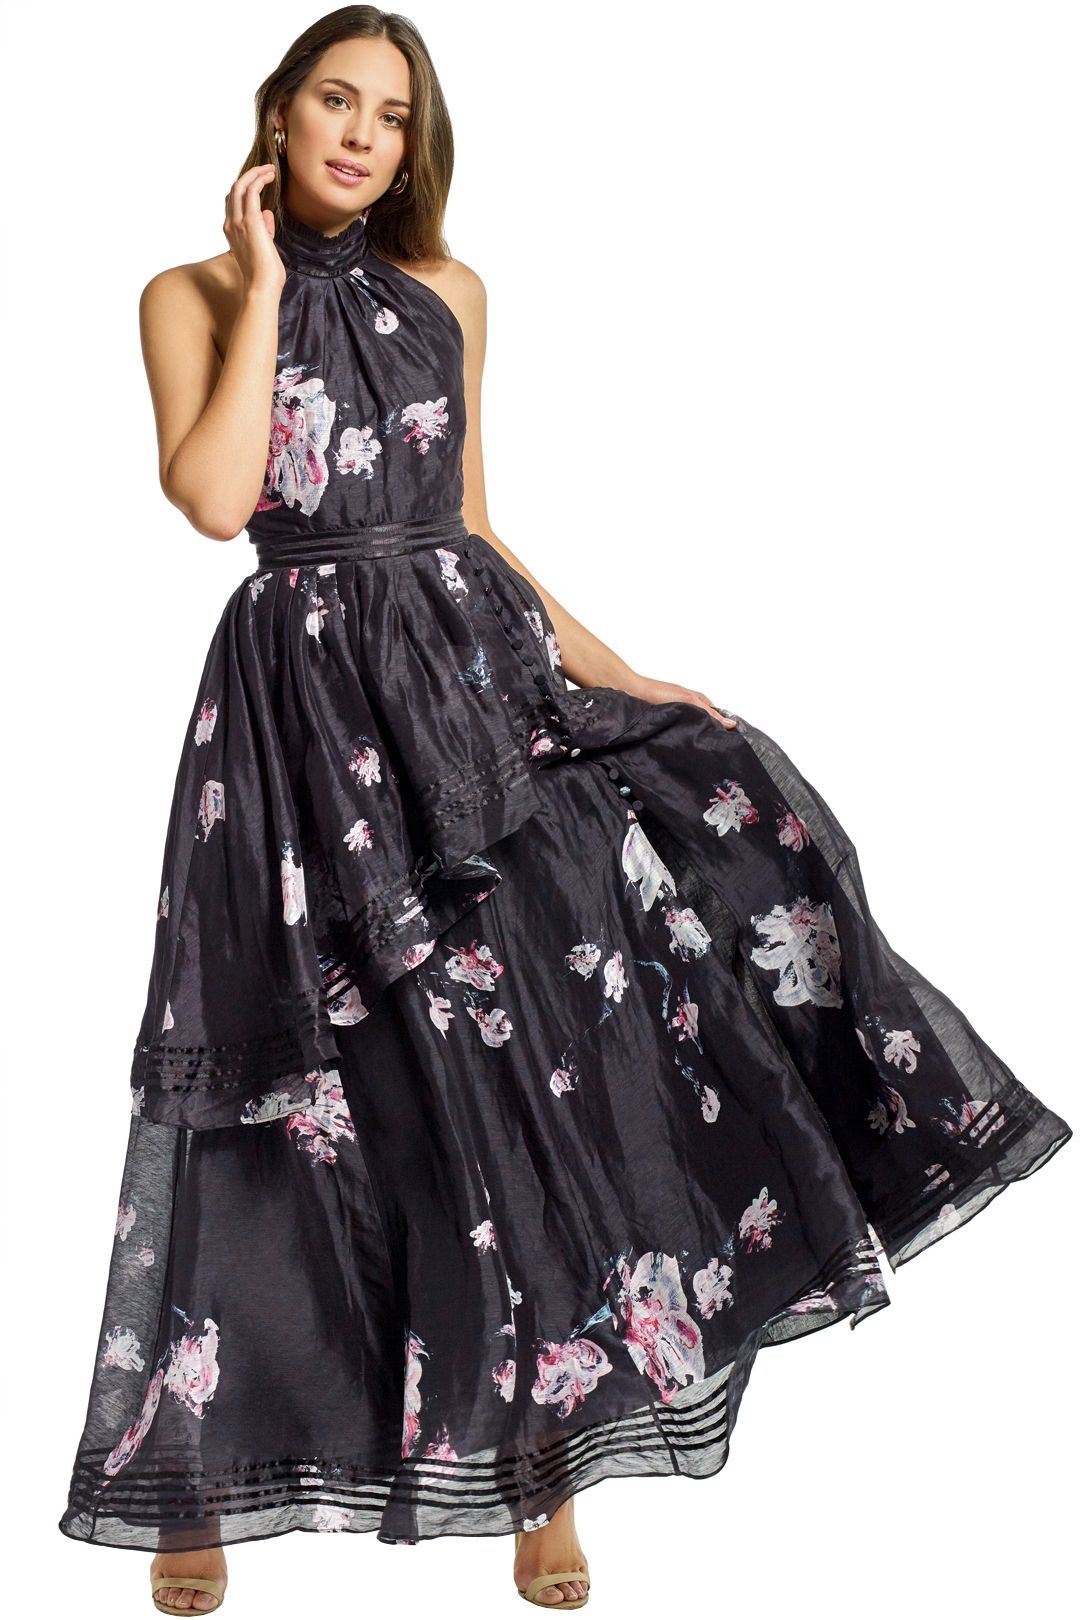 Aje - Sienna Dress - Black Floral - Front